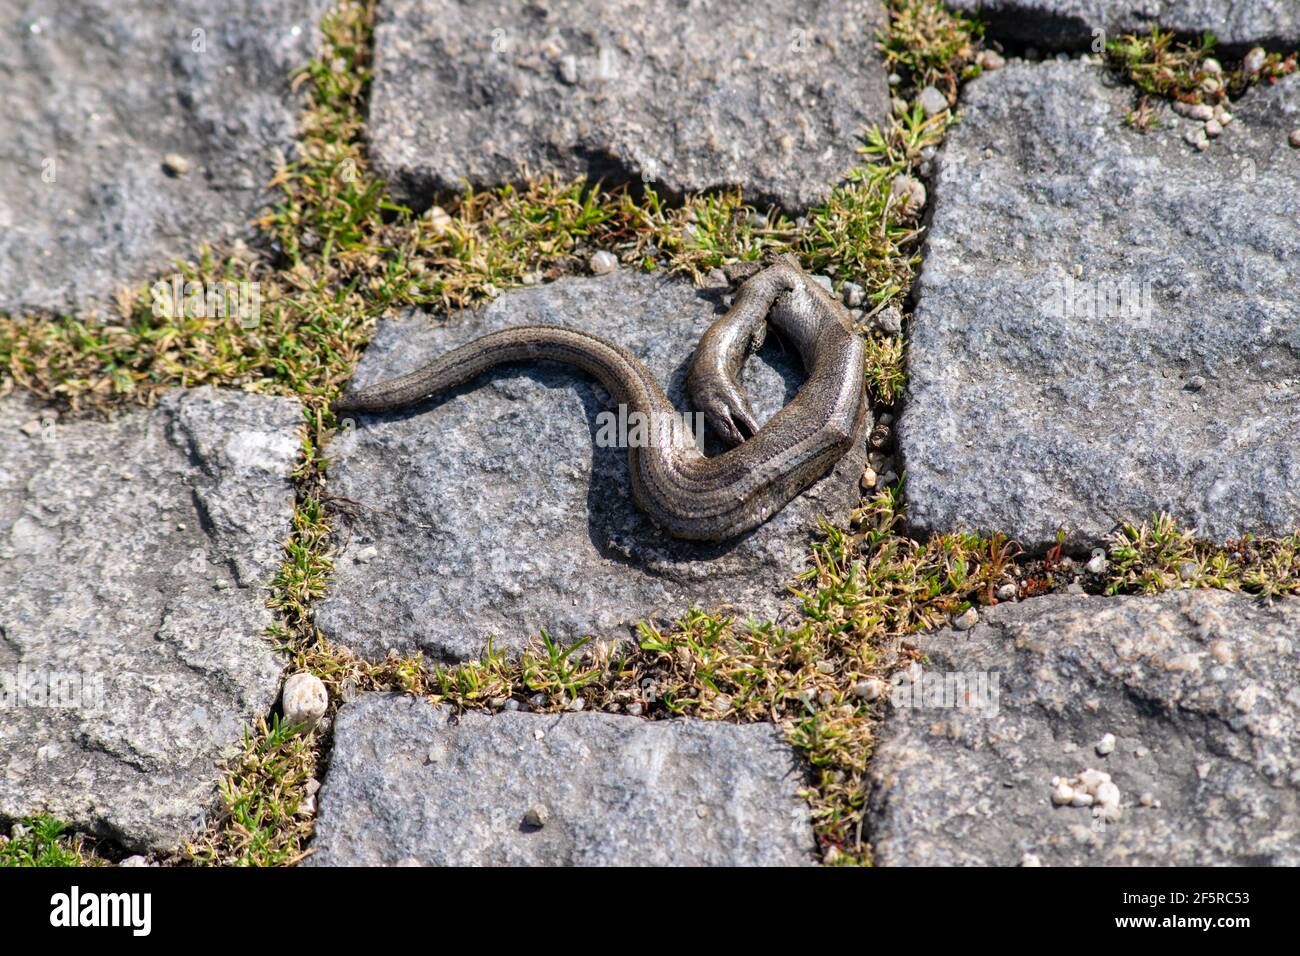 "Slow-worm", "Slowworm" und "blindworm" oder Anguis fragilis, Licranço, Cobra-de-vidro gründete tot. Gefunden in Westeuropa, Nordeuropa. Stockfoto